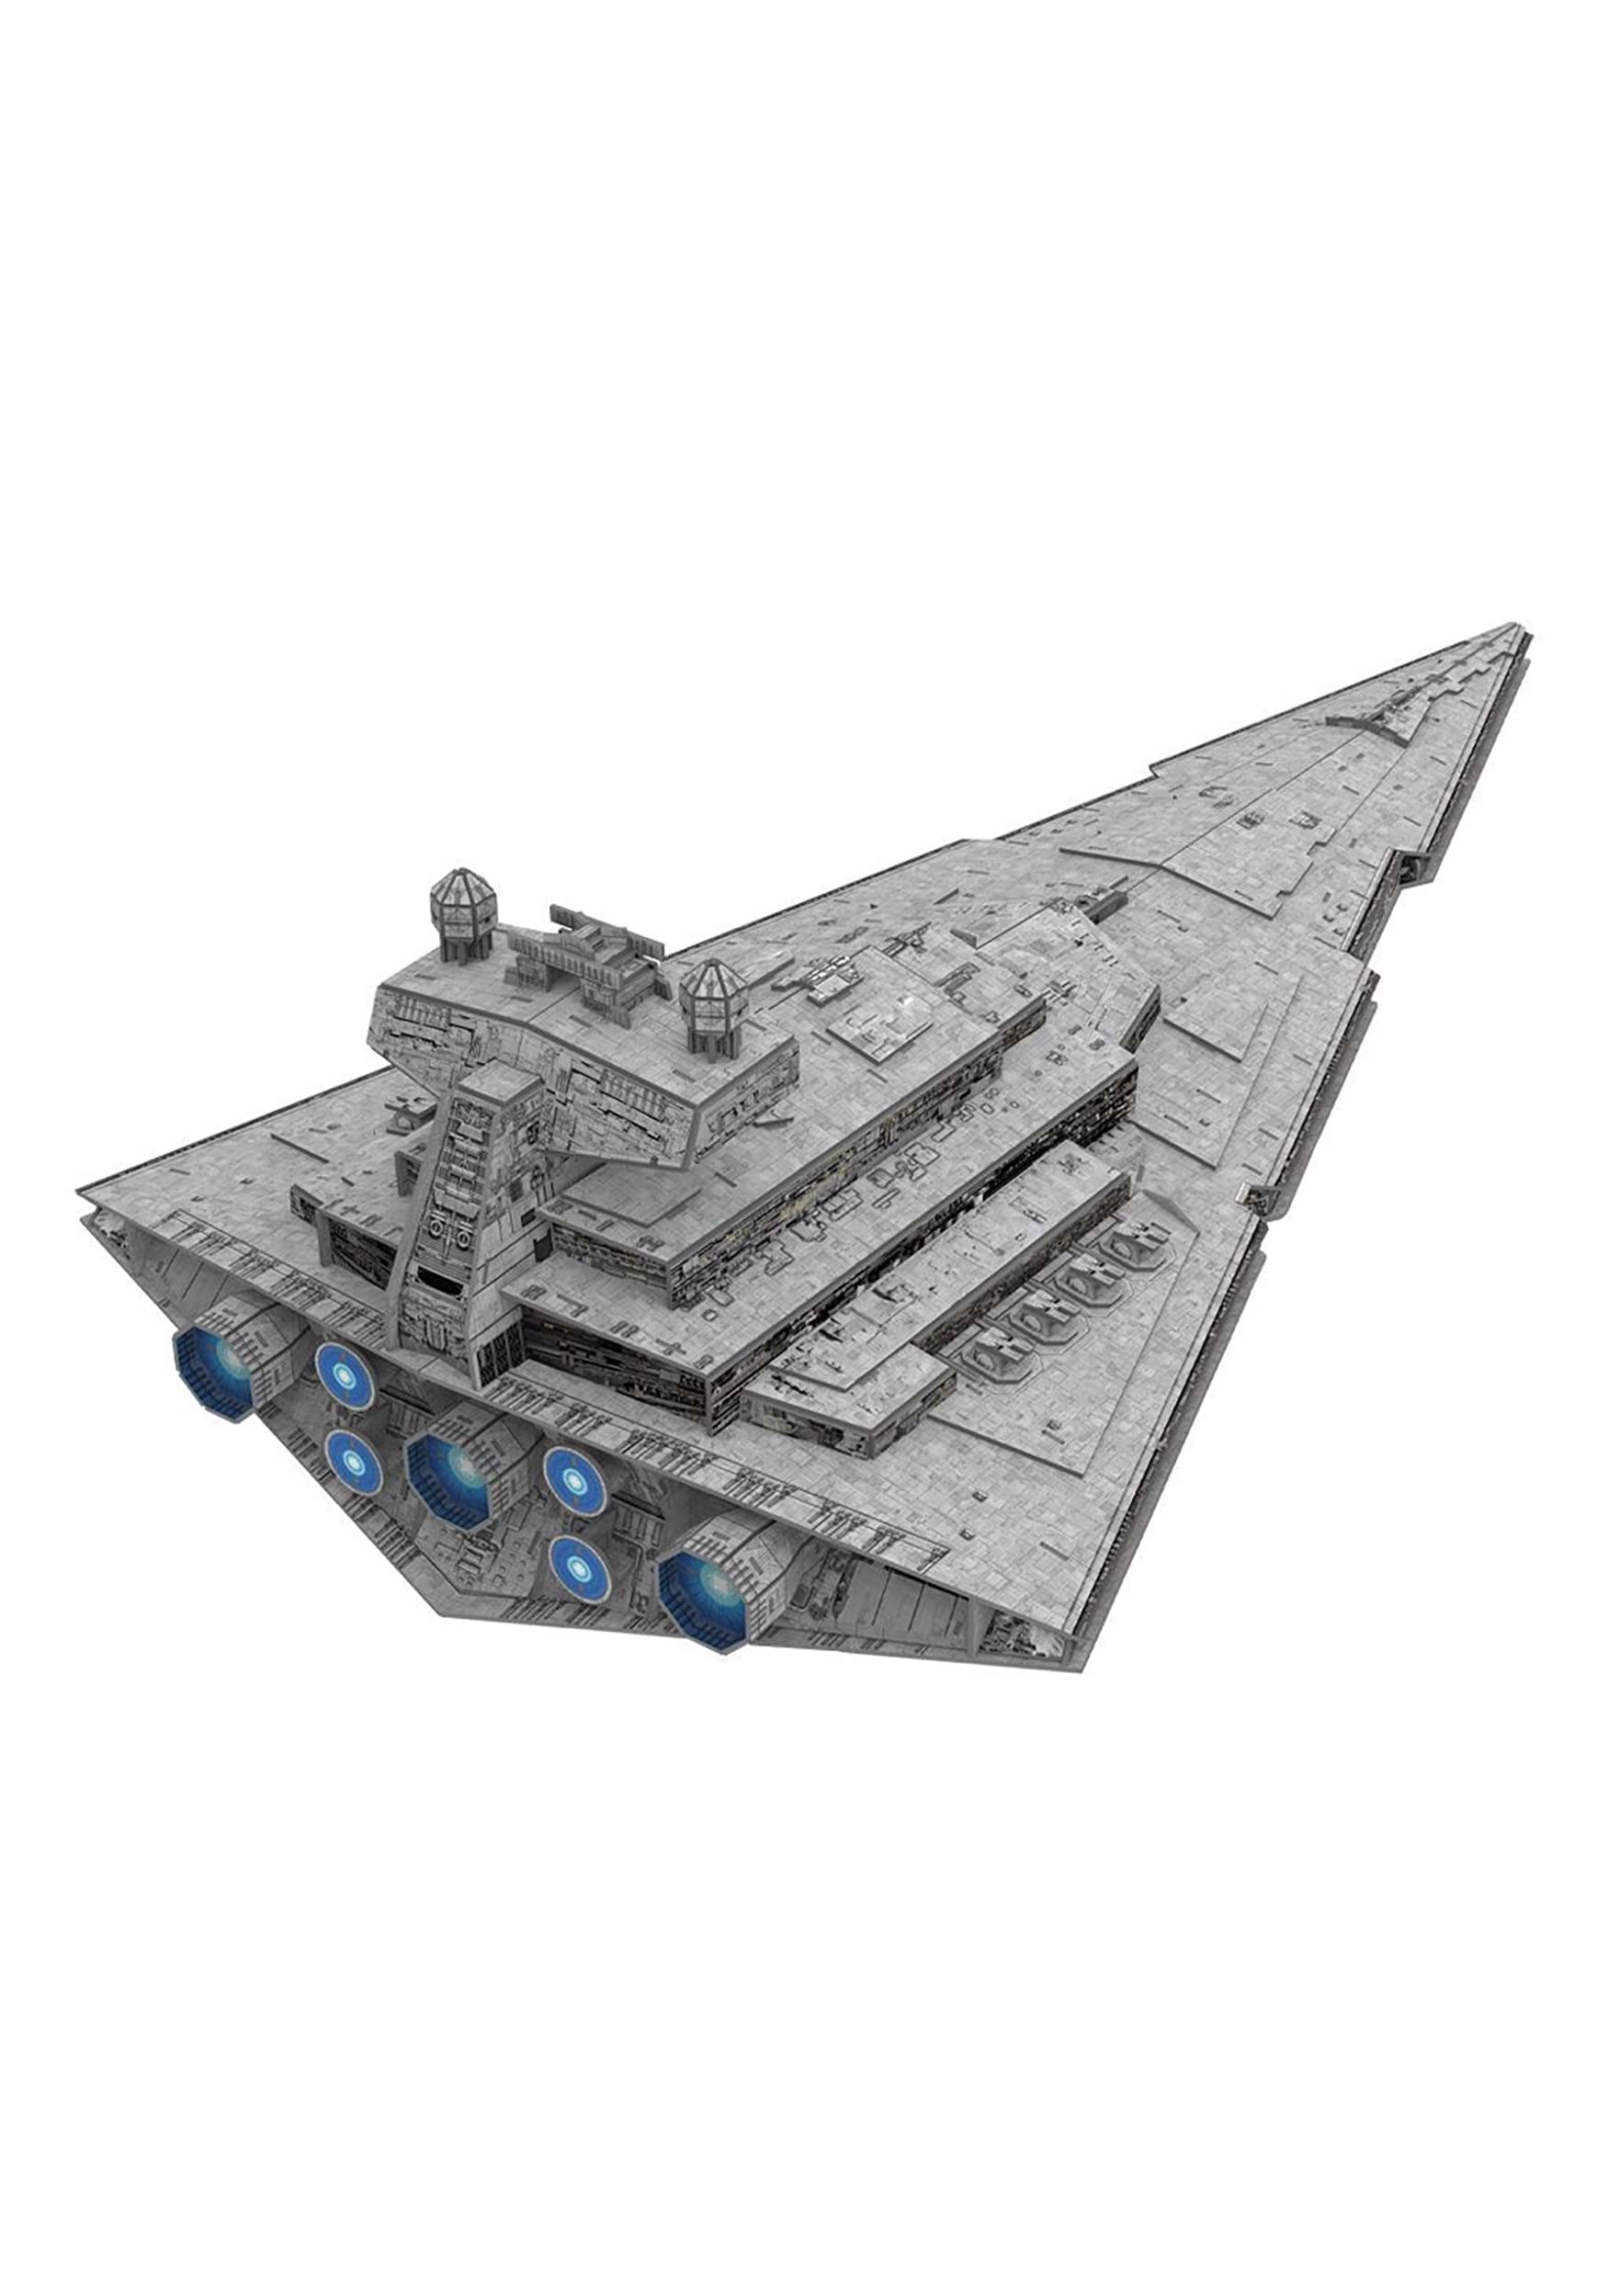 Imperial Star Destroyer Star Wars Paper Model Kit